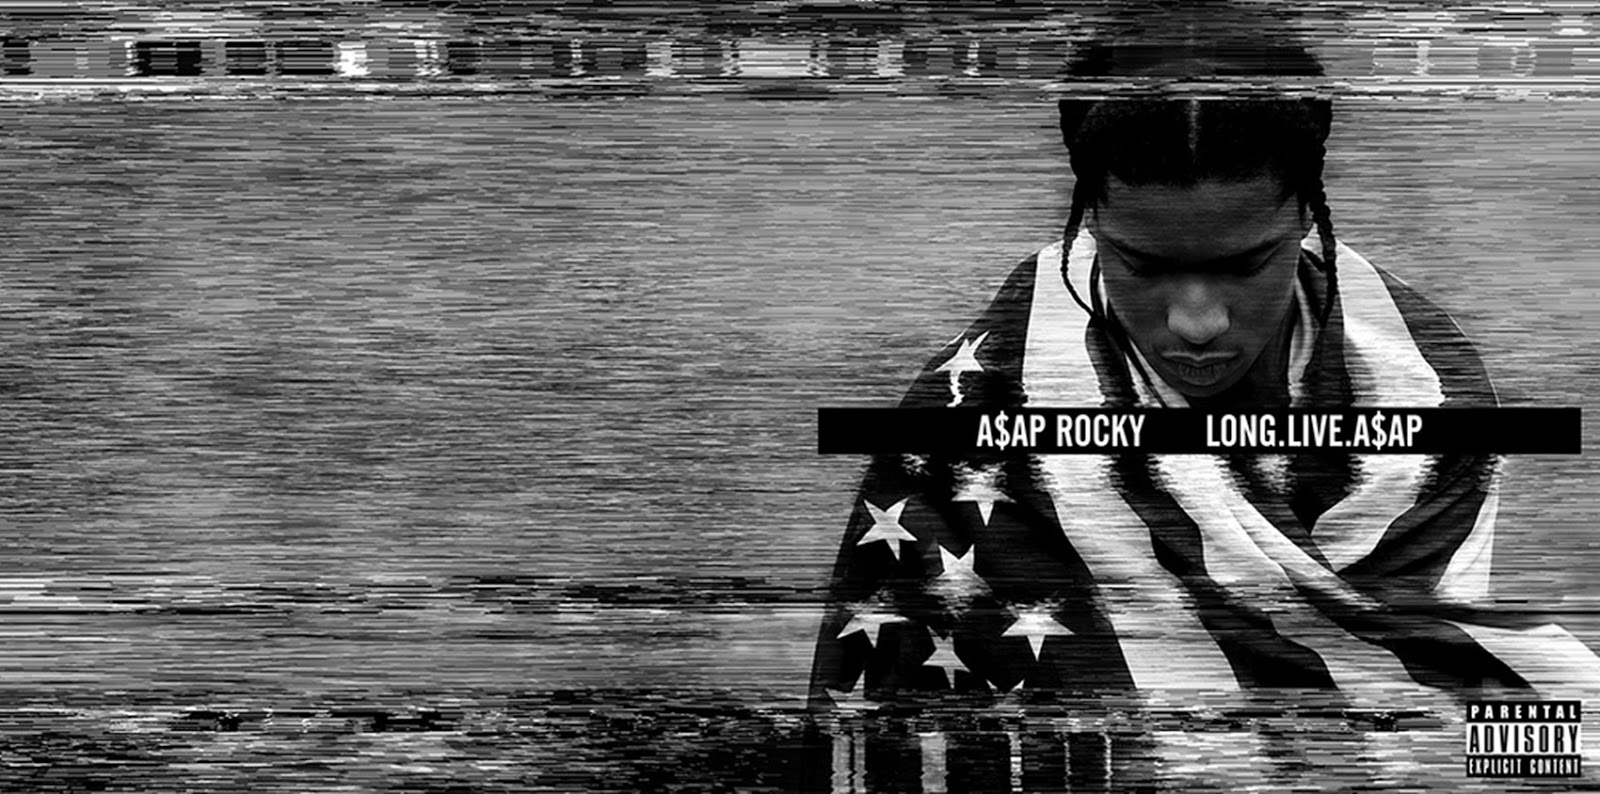 Life us long. ASAP Rocky long Live ASAP. Long Live ASAP обложка. ASAP Rocky album. A$AP Rocky "long.Live.a$AP" обложка.